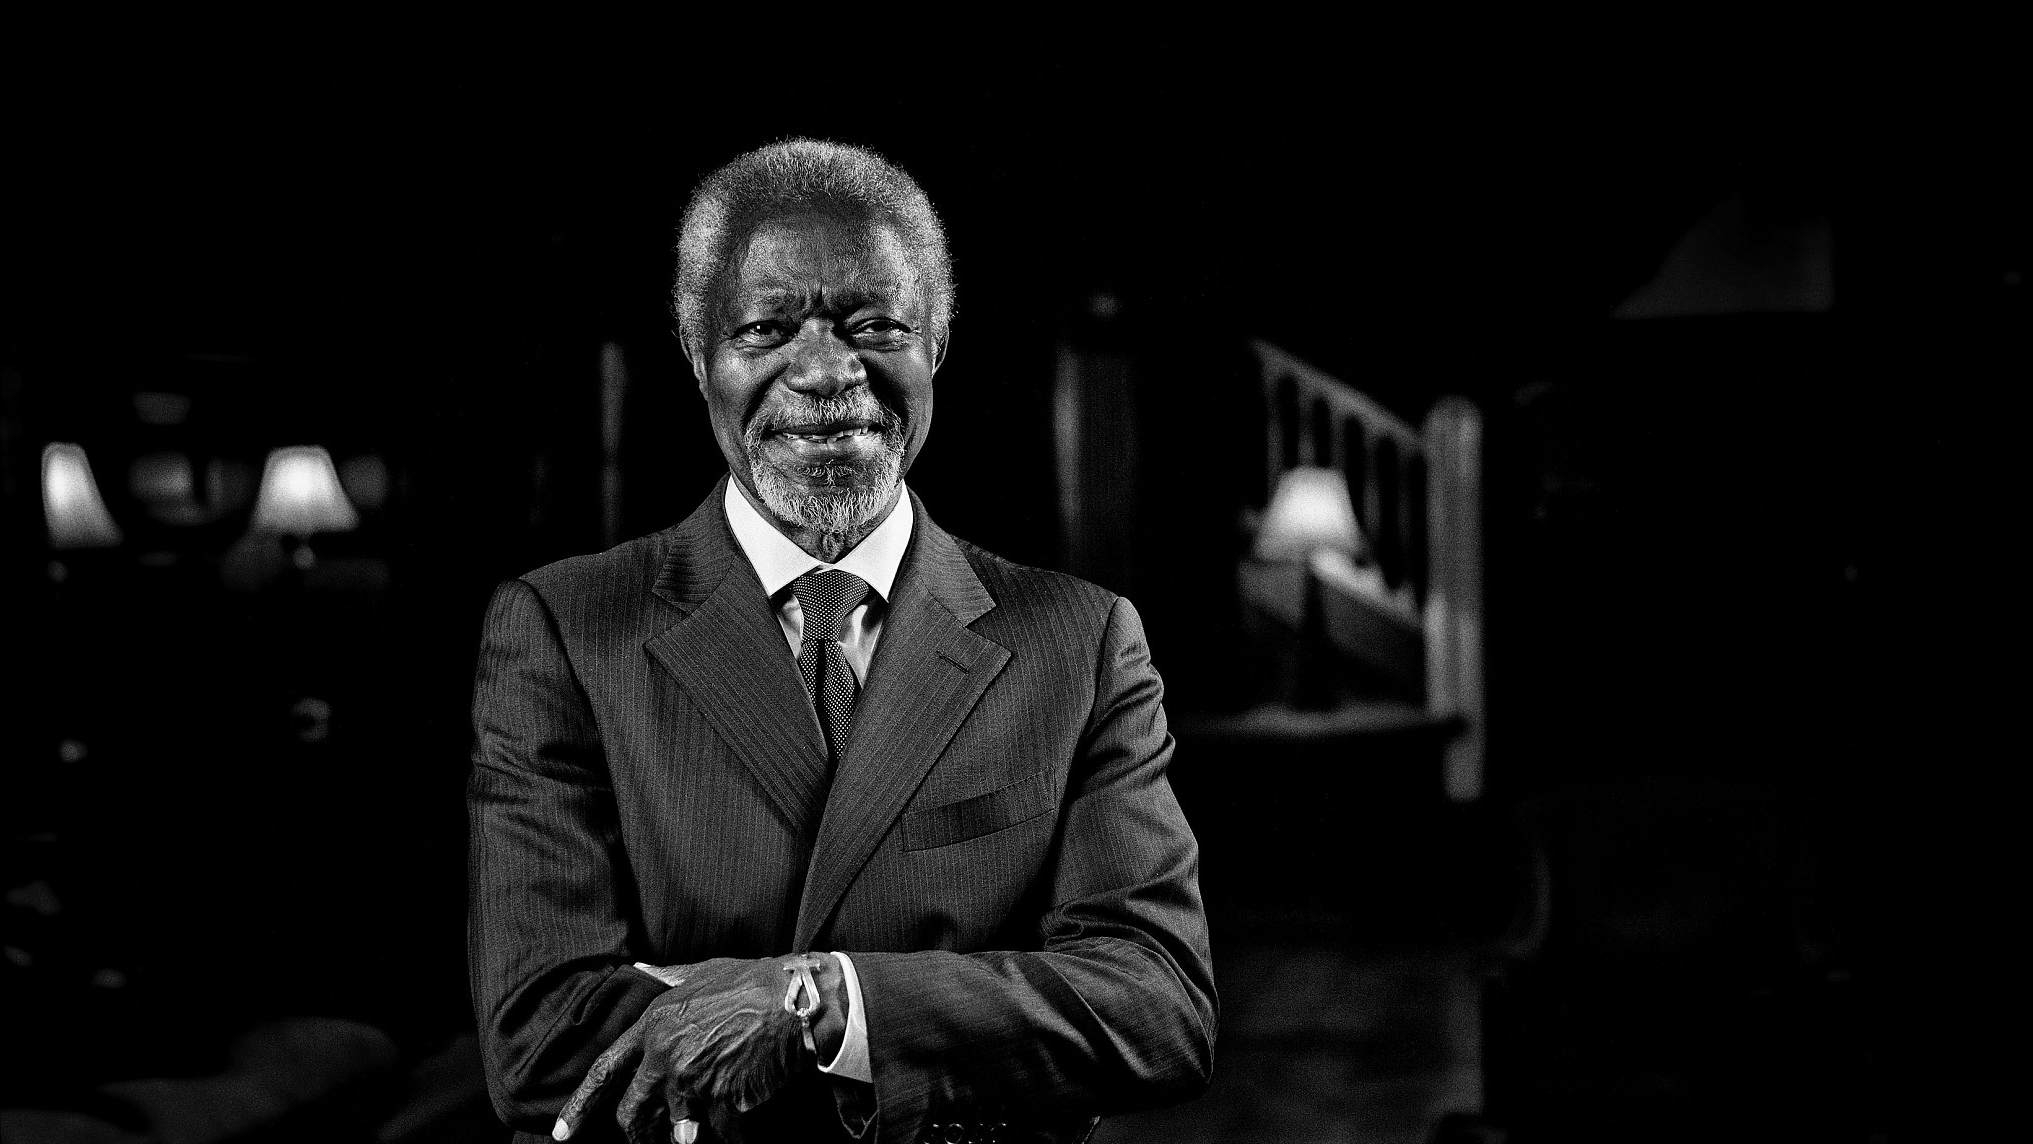 Former UN Chief Kofi Annan passes away - CGTN